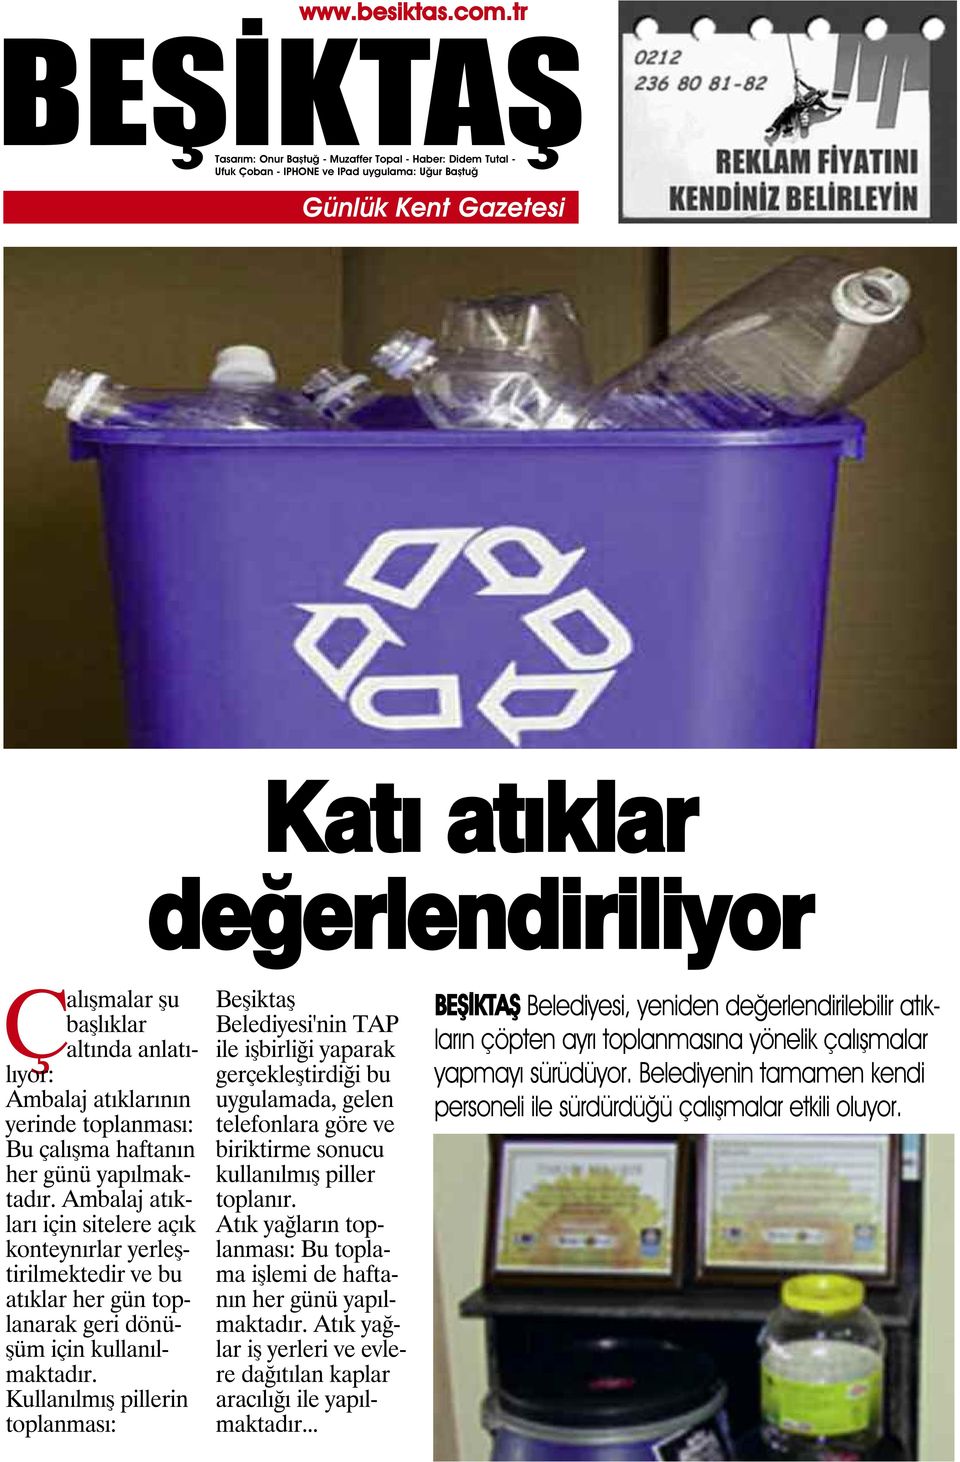 Kullanılmış pillerin toplanması: Beşiktaş Belediyesi'nin TAP ile işbirliği yaparak gerçekleştirdiği bu uygulamada, gelen telefonlara göre ve biriktirme sonucu kullanılmış piller toplanır.